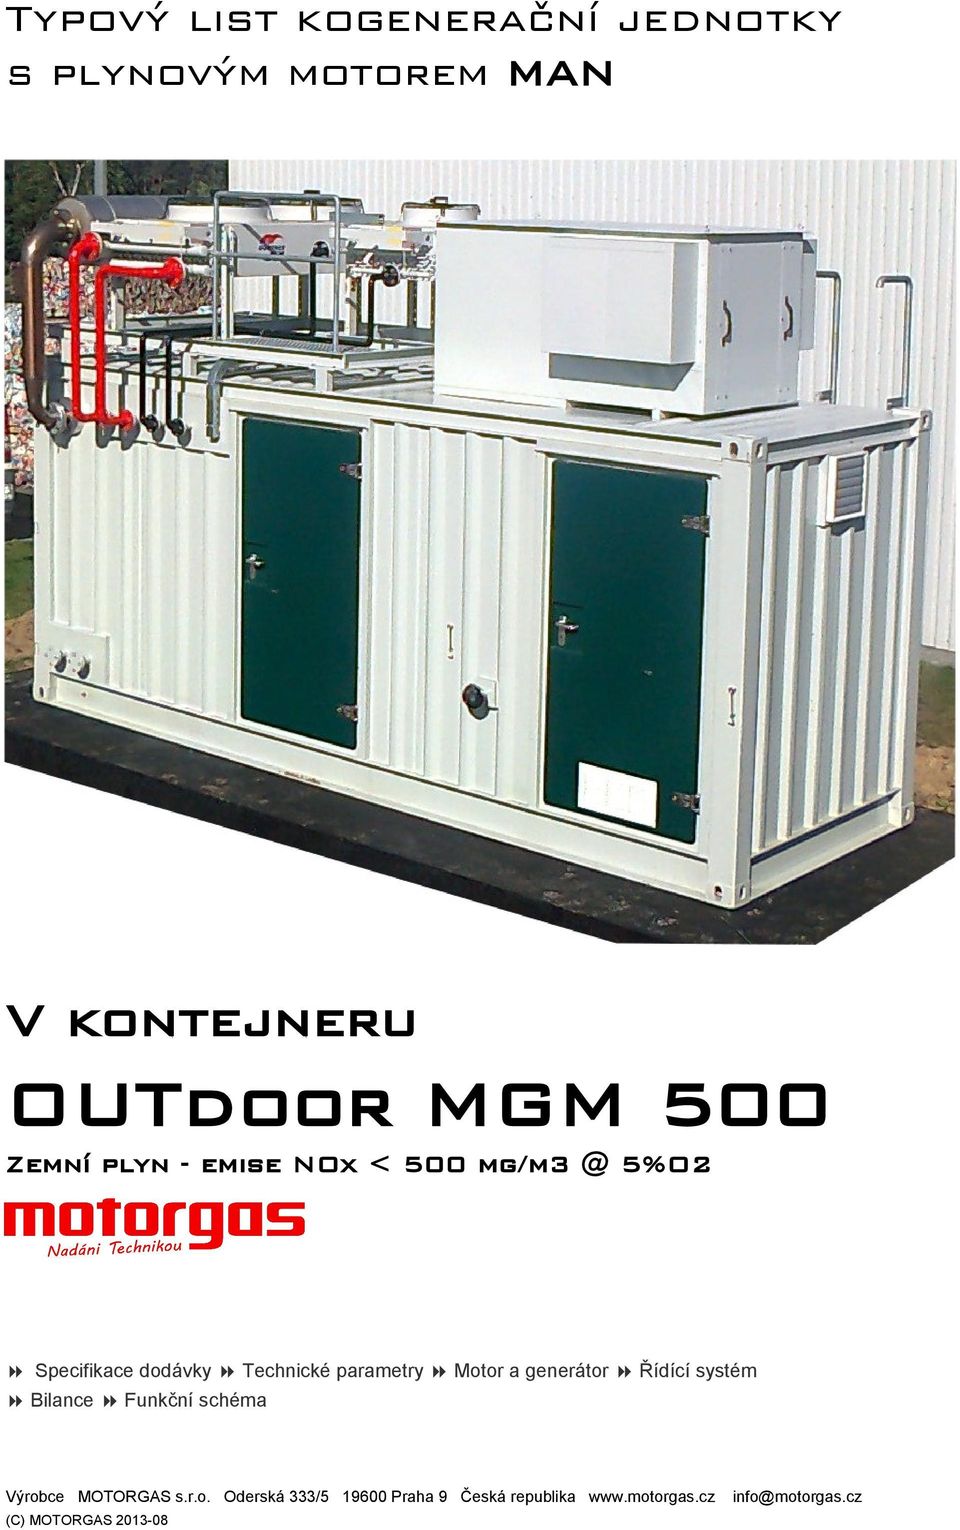 Motor a generátor Řídící systém Bilance Funkční schéma Výrobce MOTORGAS s.r.o. Oderská 333/5 19600 Praha 9 Česká republika www.